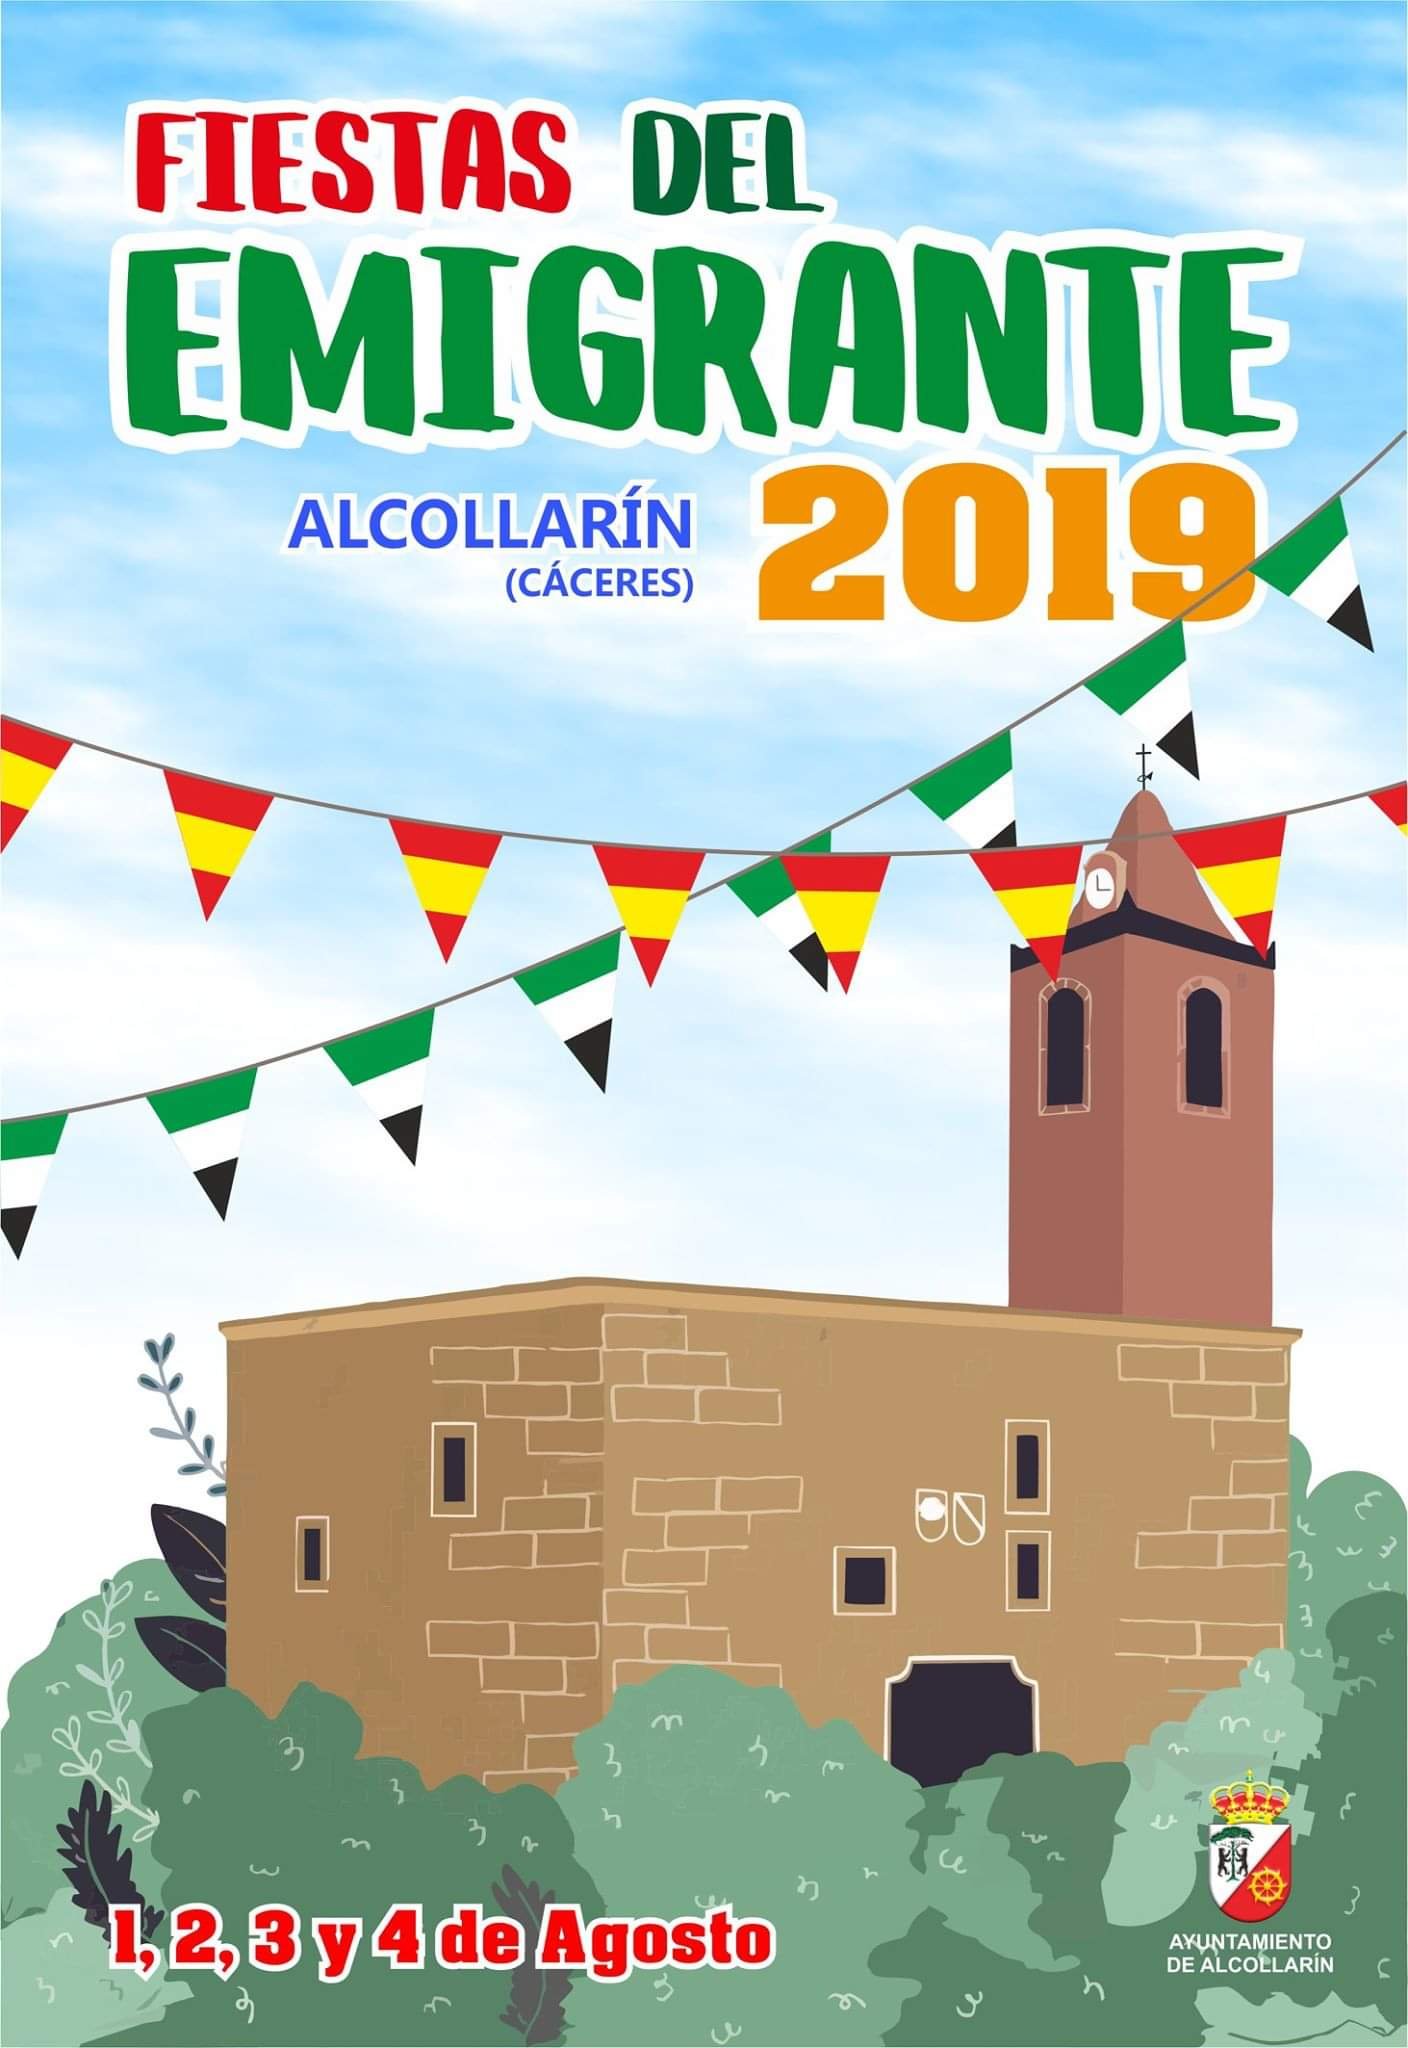 Fiestas del Emigrante 2019 - Alcollarín (Cáceres) 1